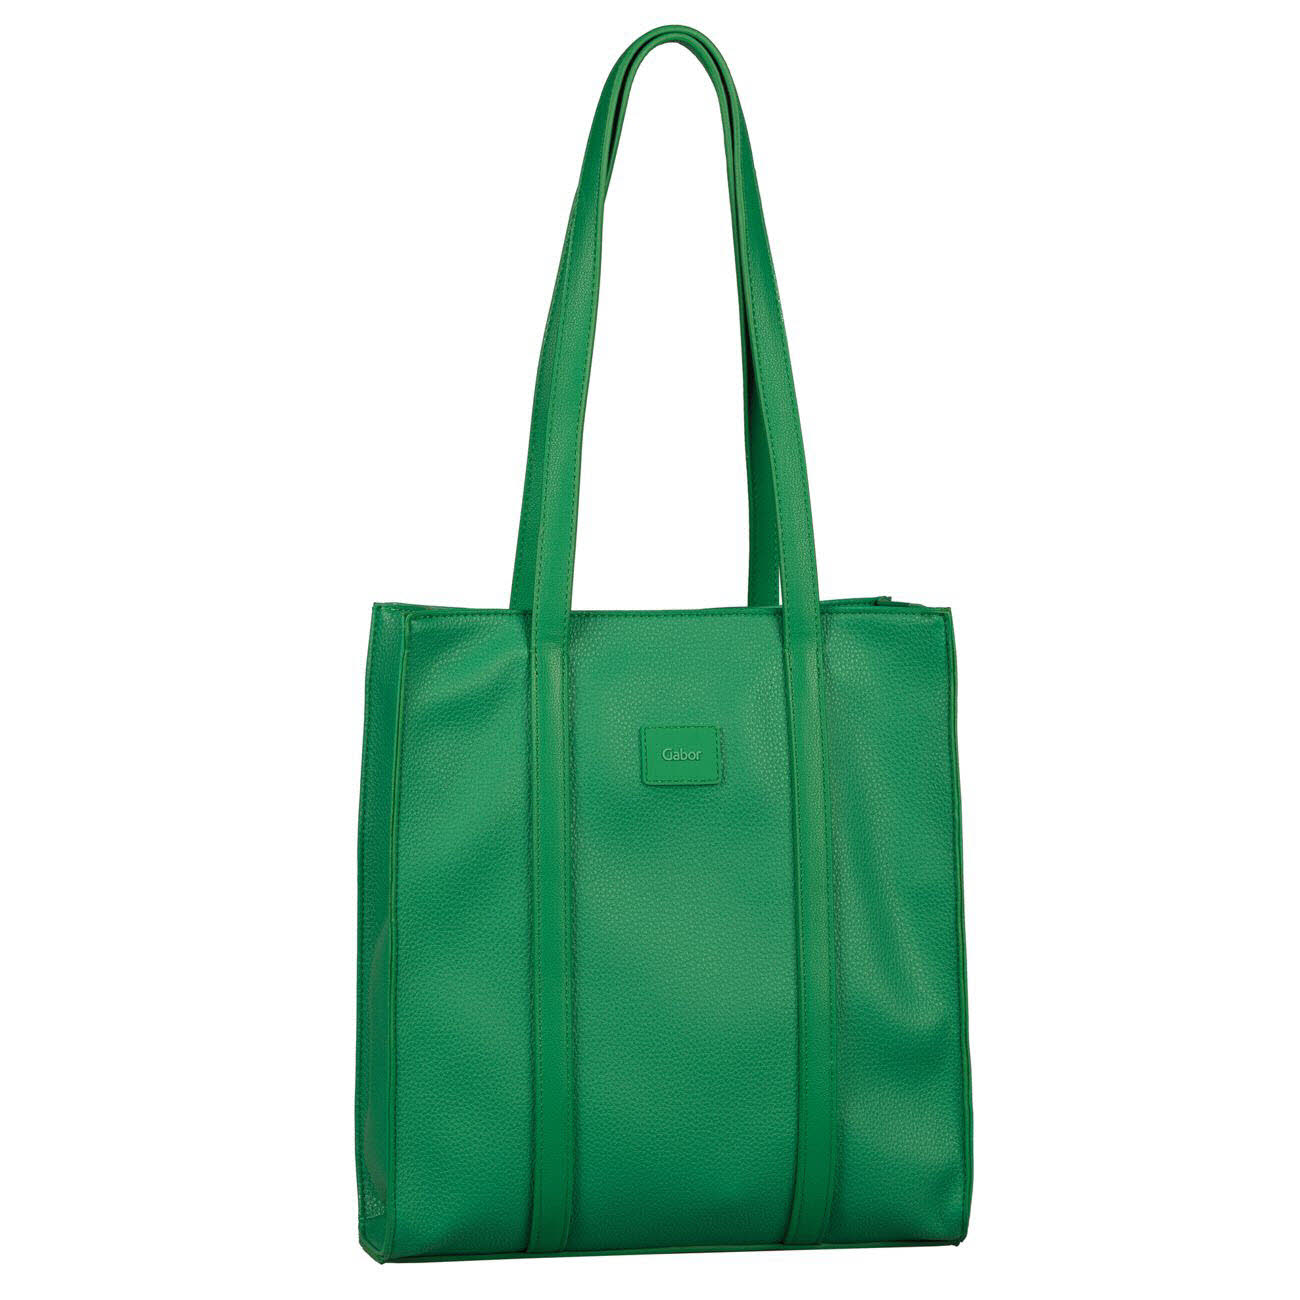 Damen Shopper von Gabor Bags auch in Grün erhältlich